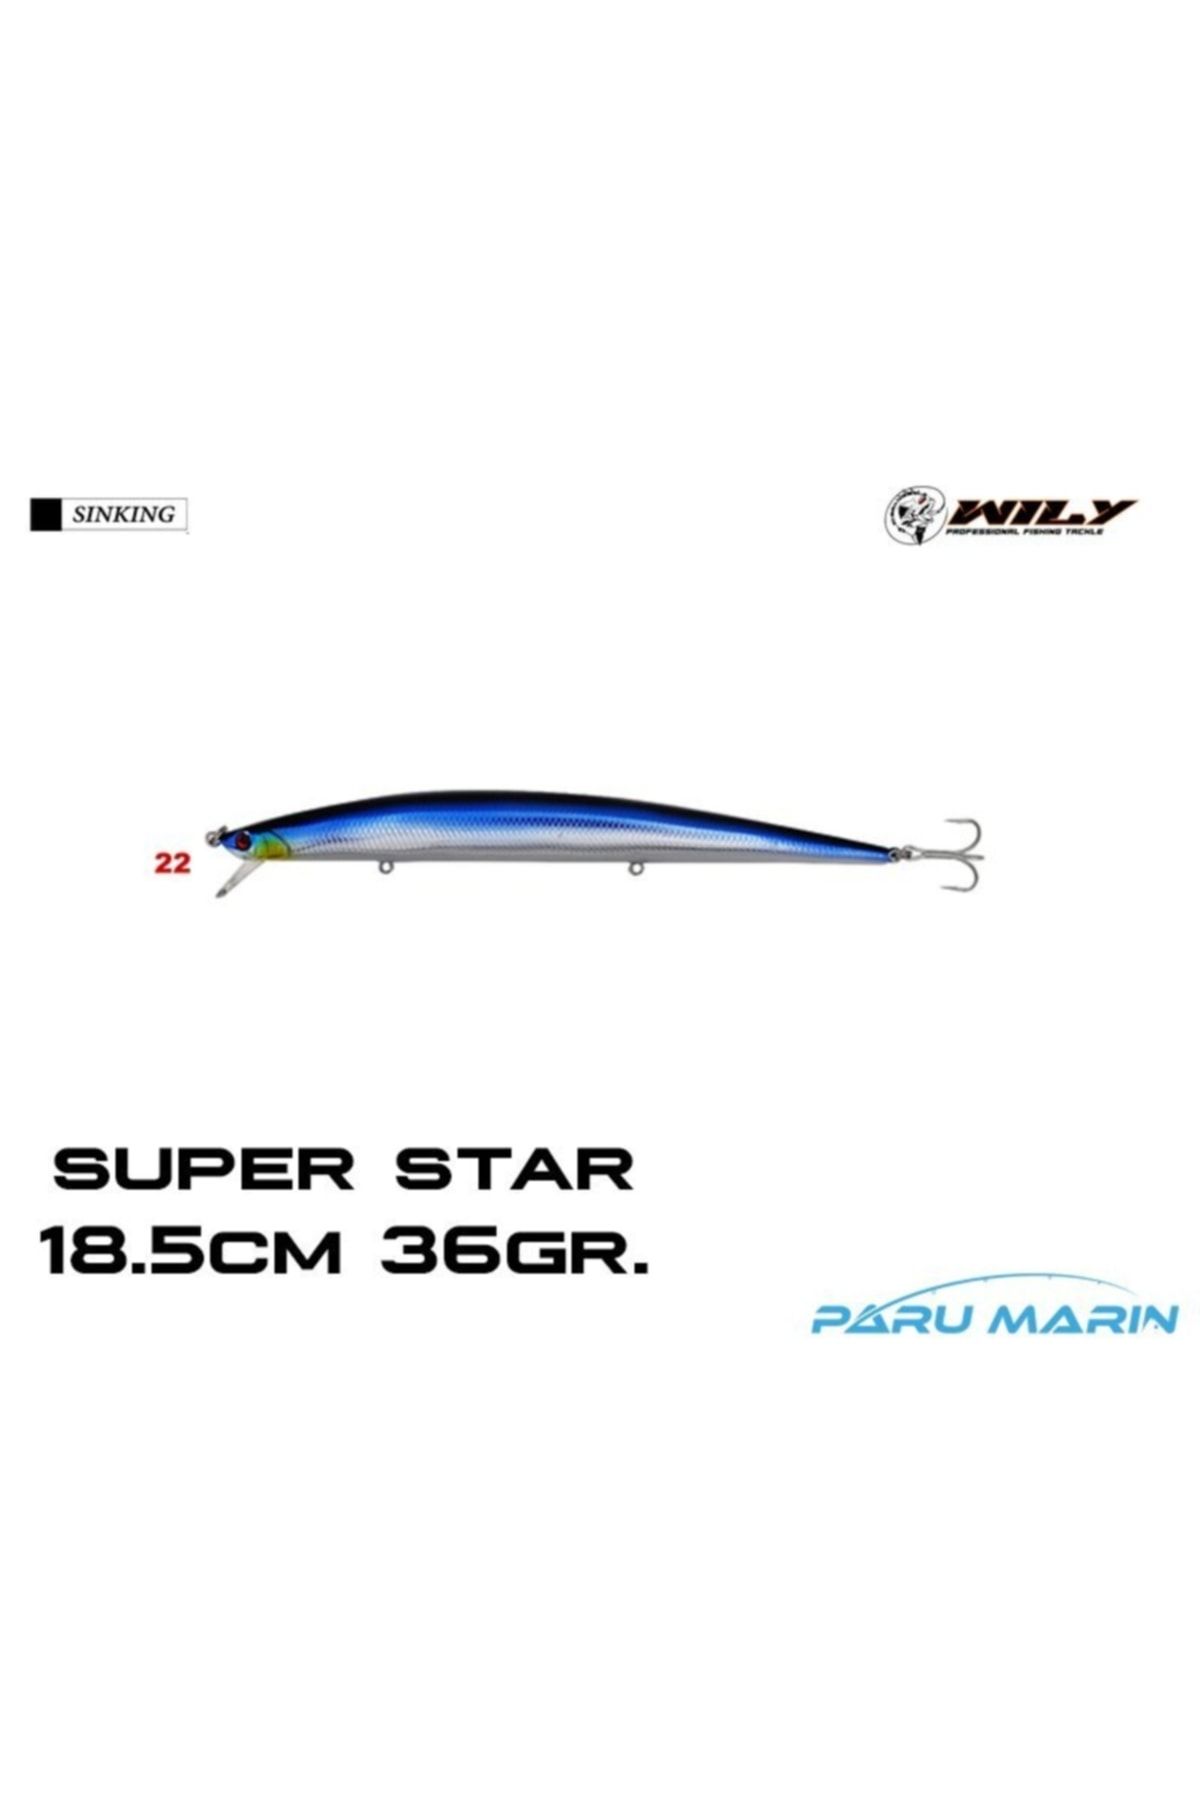 Wily Super Star 18.5cm 36gr. (sinking) No:22